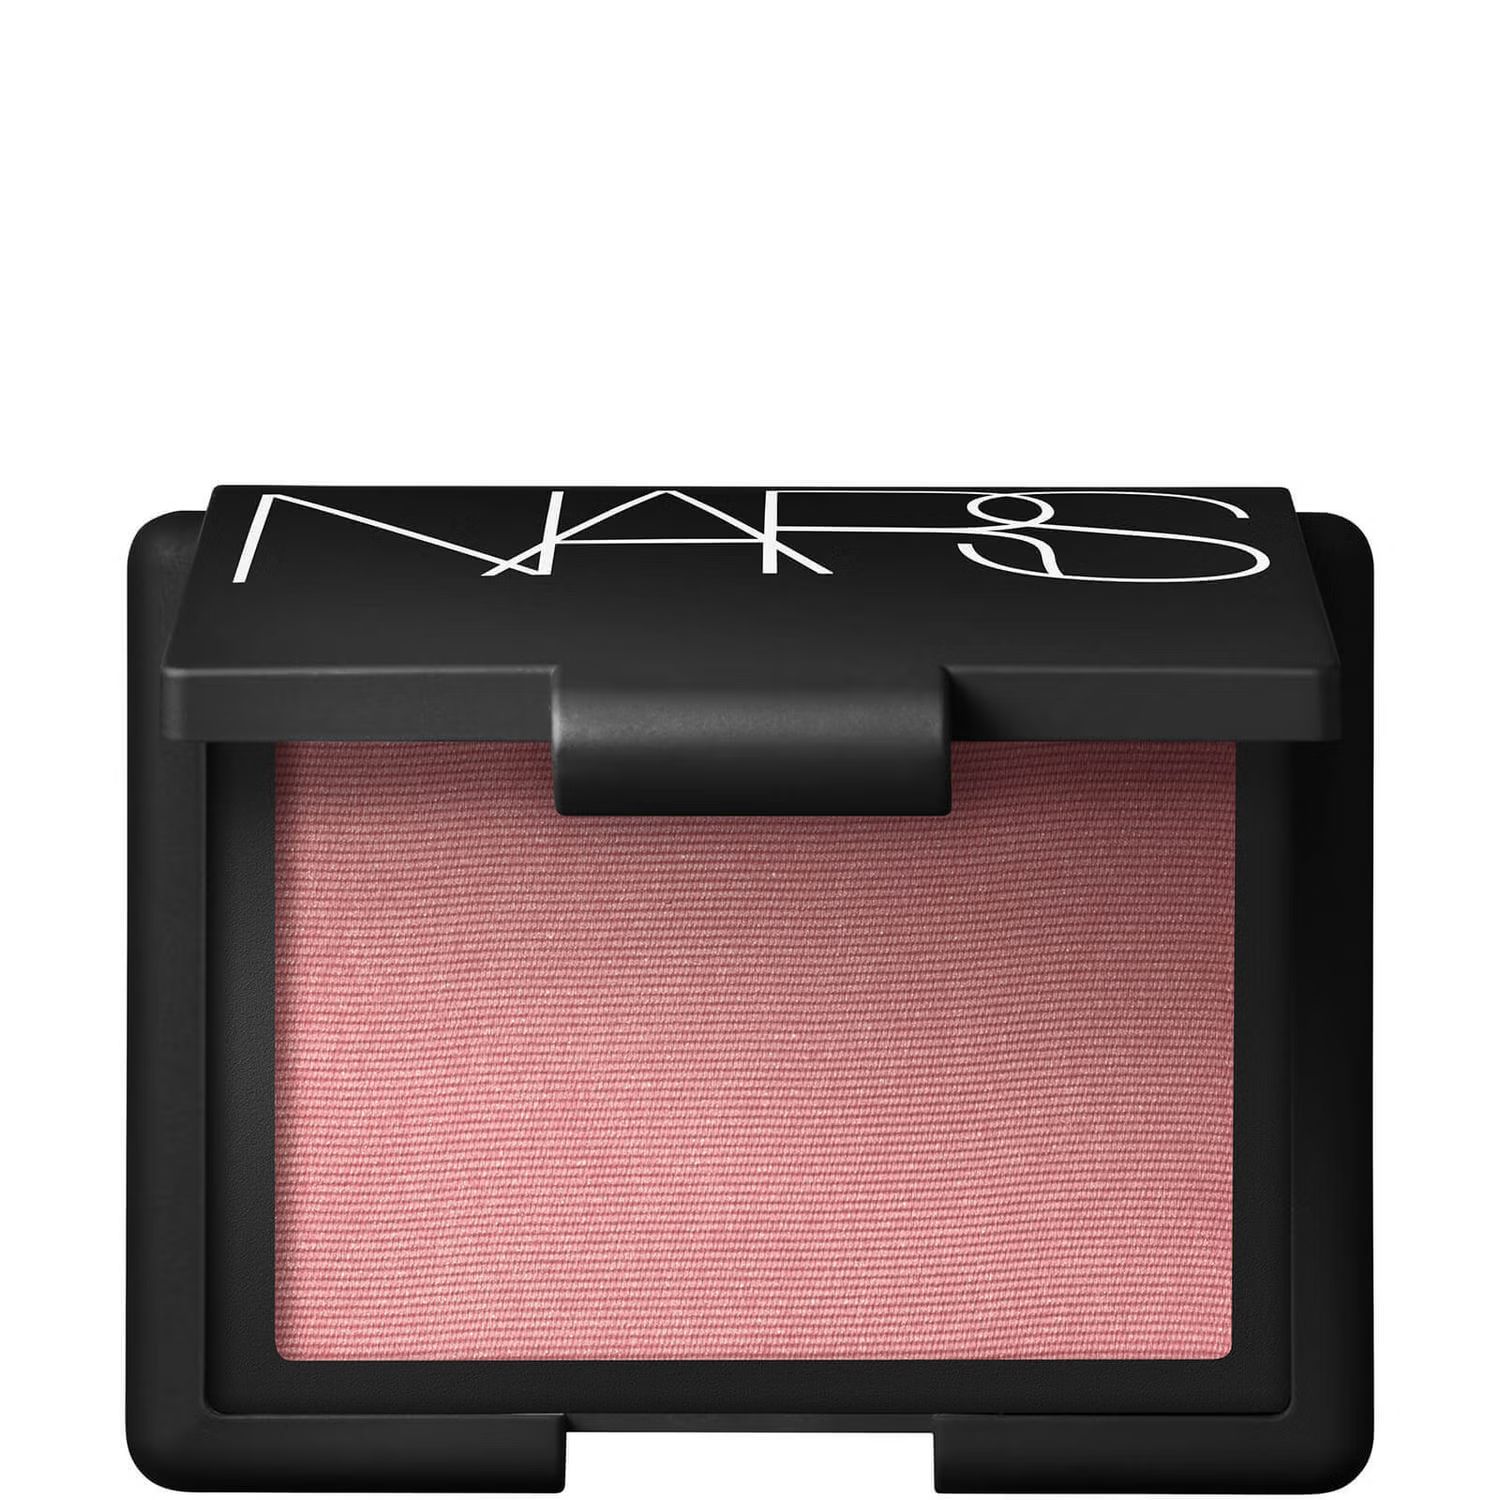 NARS Cosmetics Blush 4.8g (Various Shades) | Look Fantastic (UK)